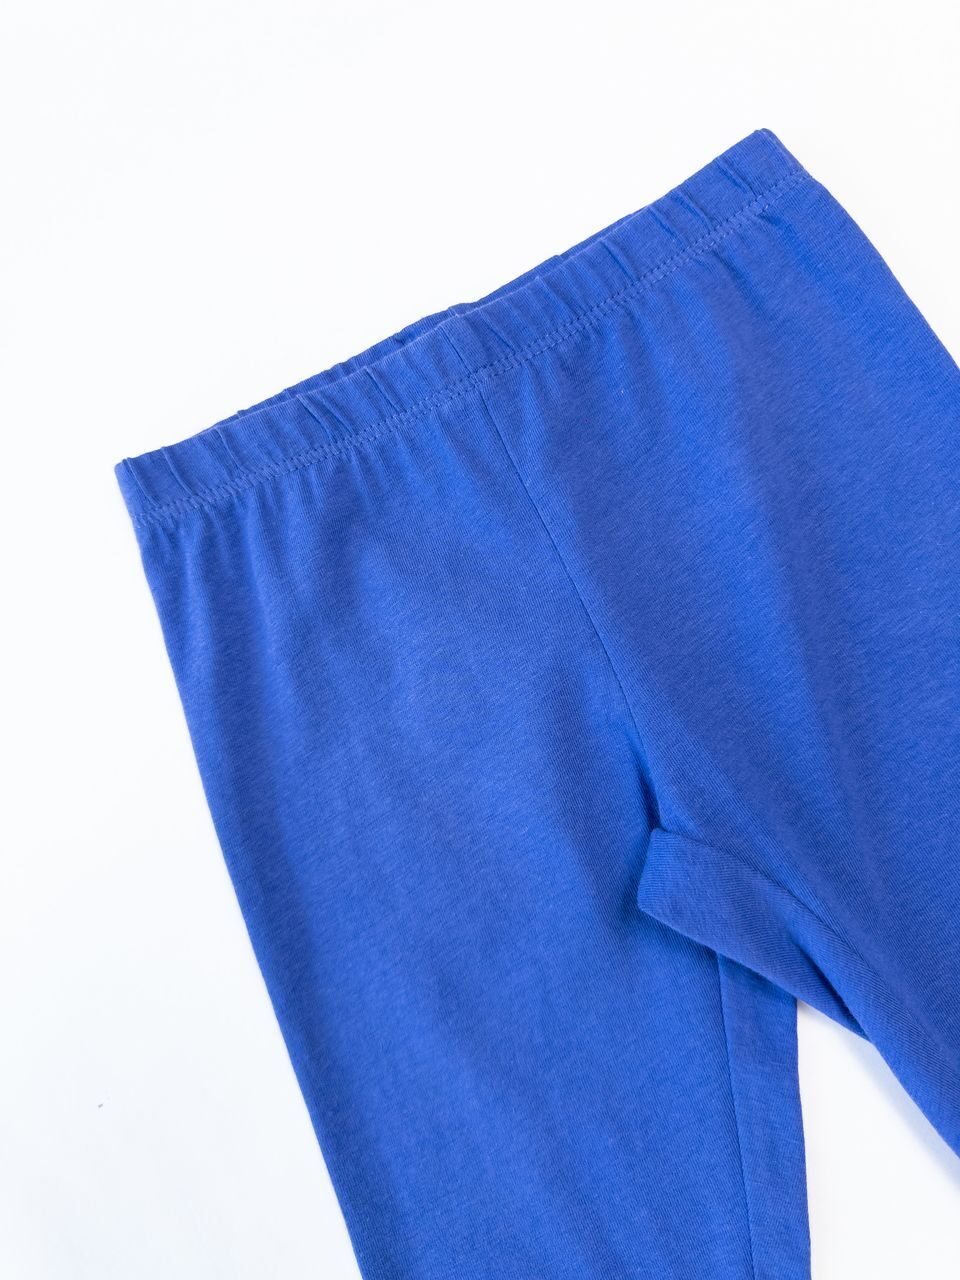 Леггинсы укороченные для девочки цвет синий на рост 110 см 4-5 лет OVS